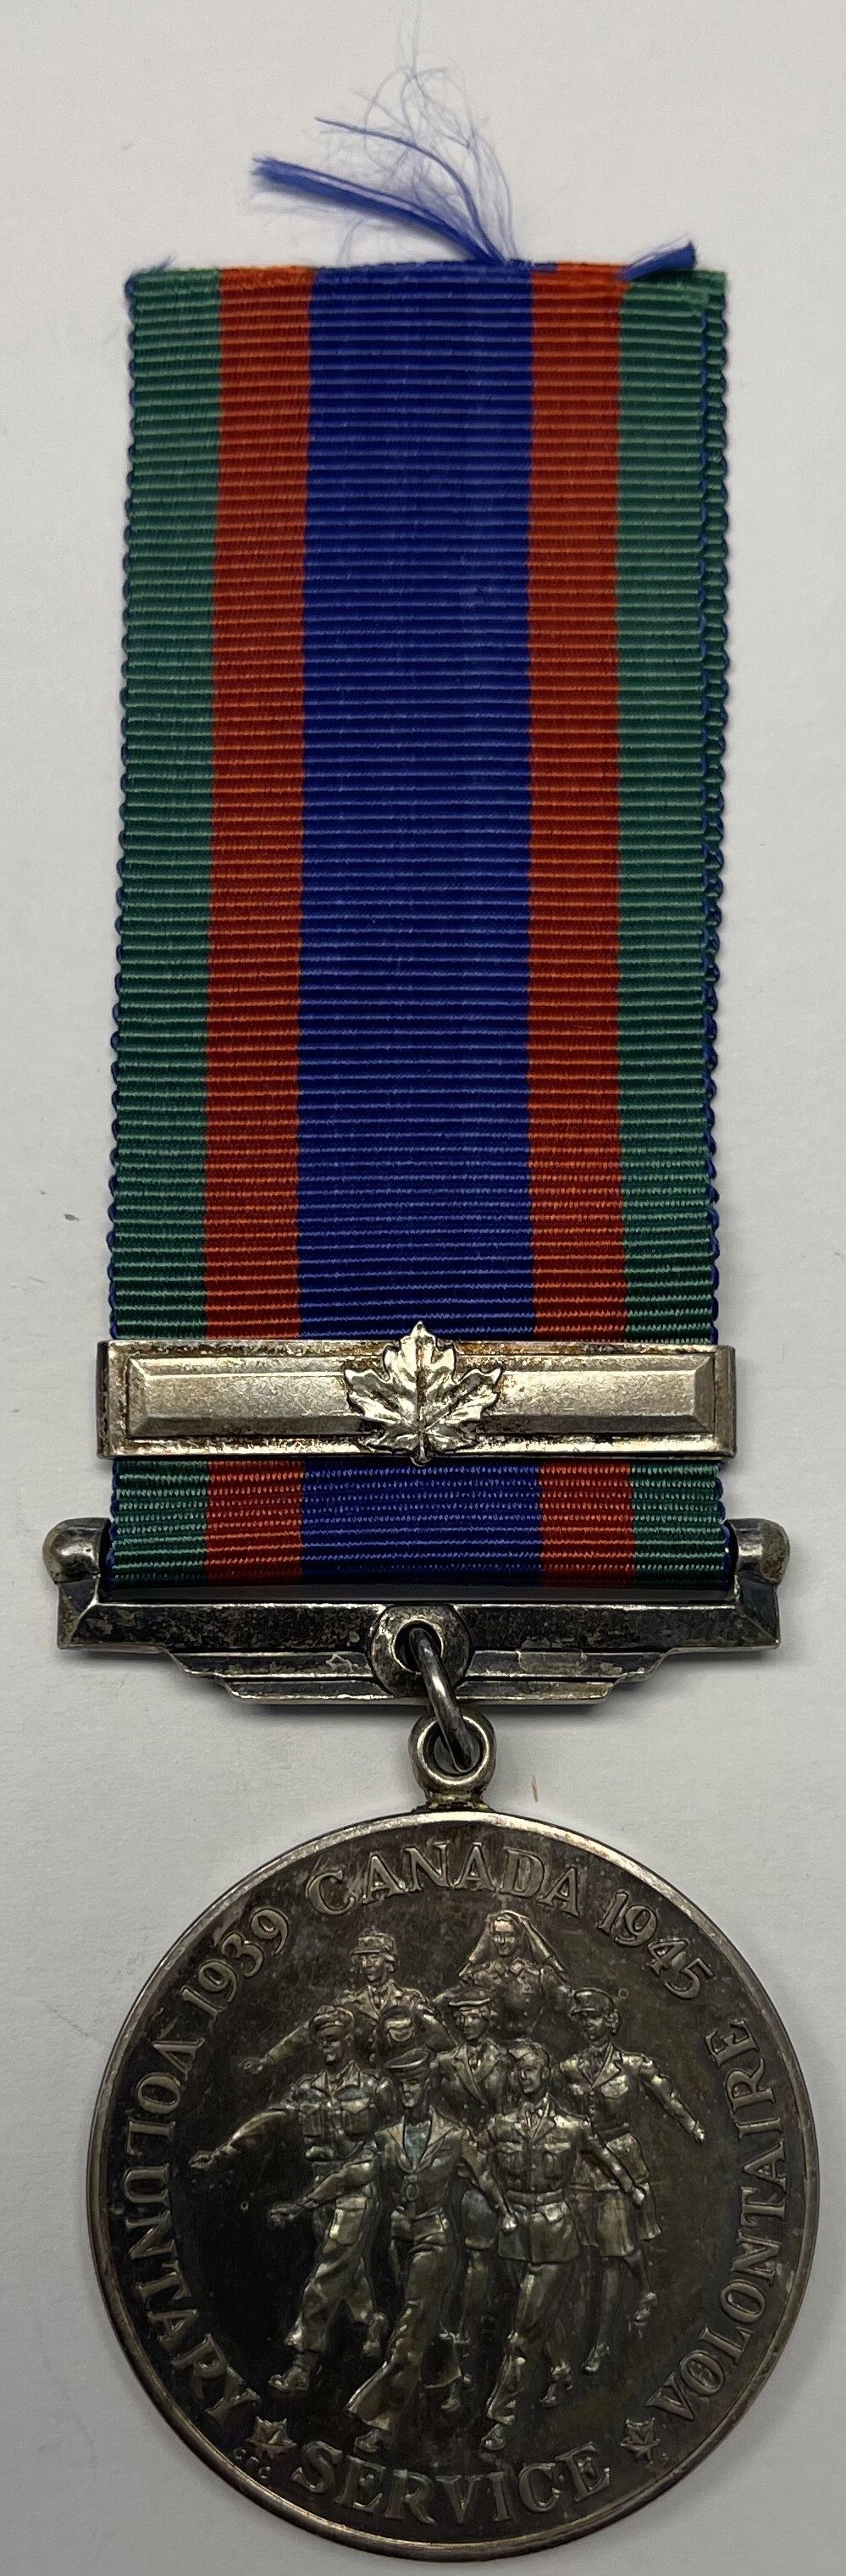 Médaille Canadienne du service volontaire avec barrette de service outremer D0006210